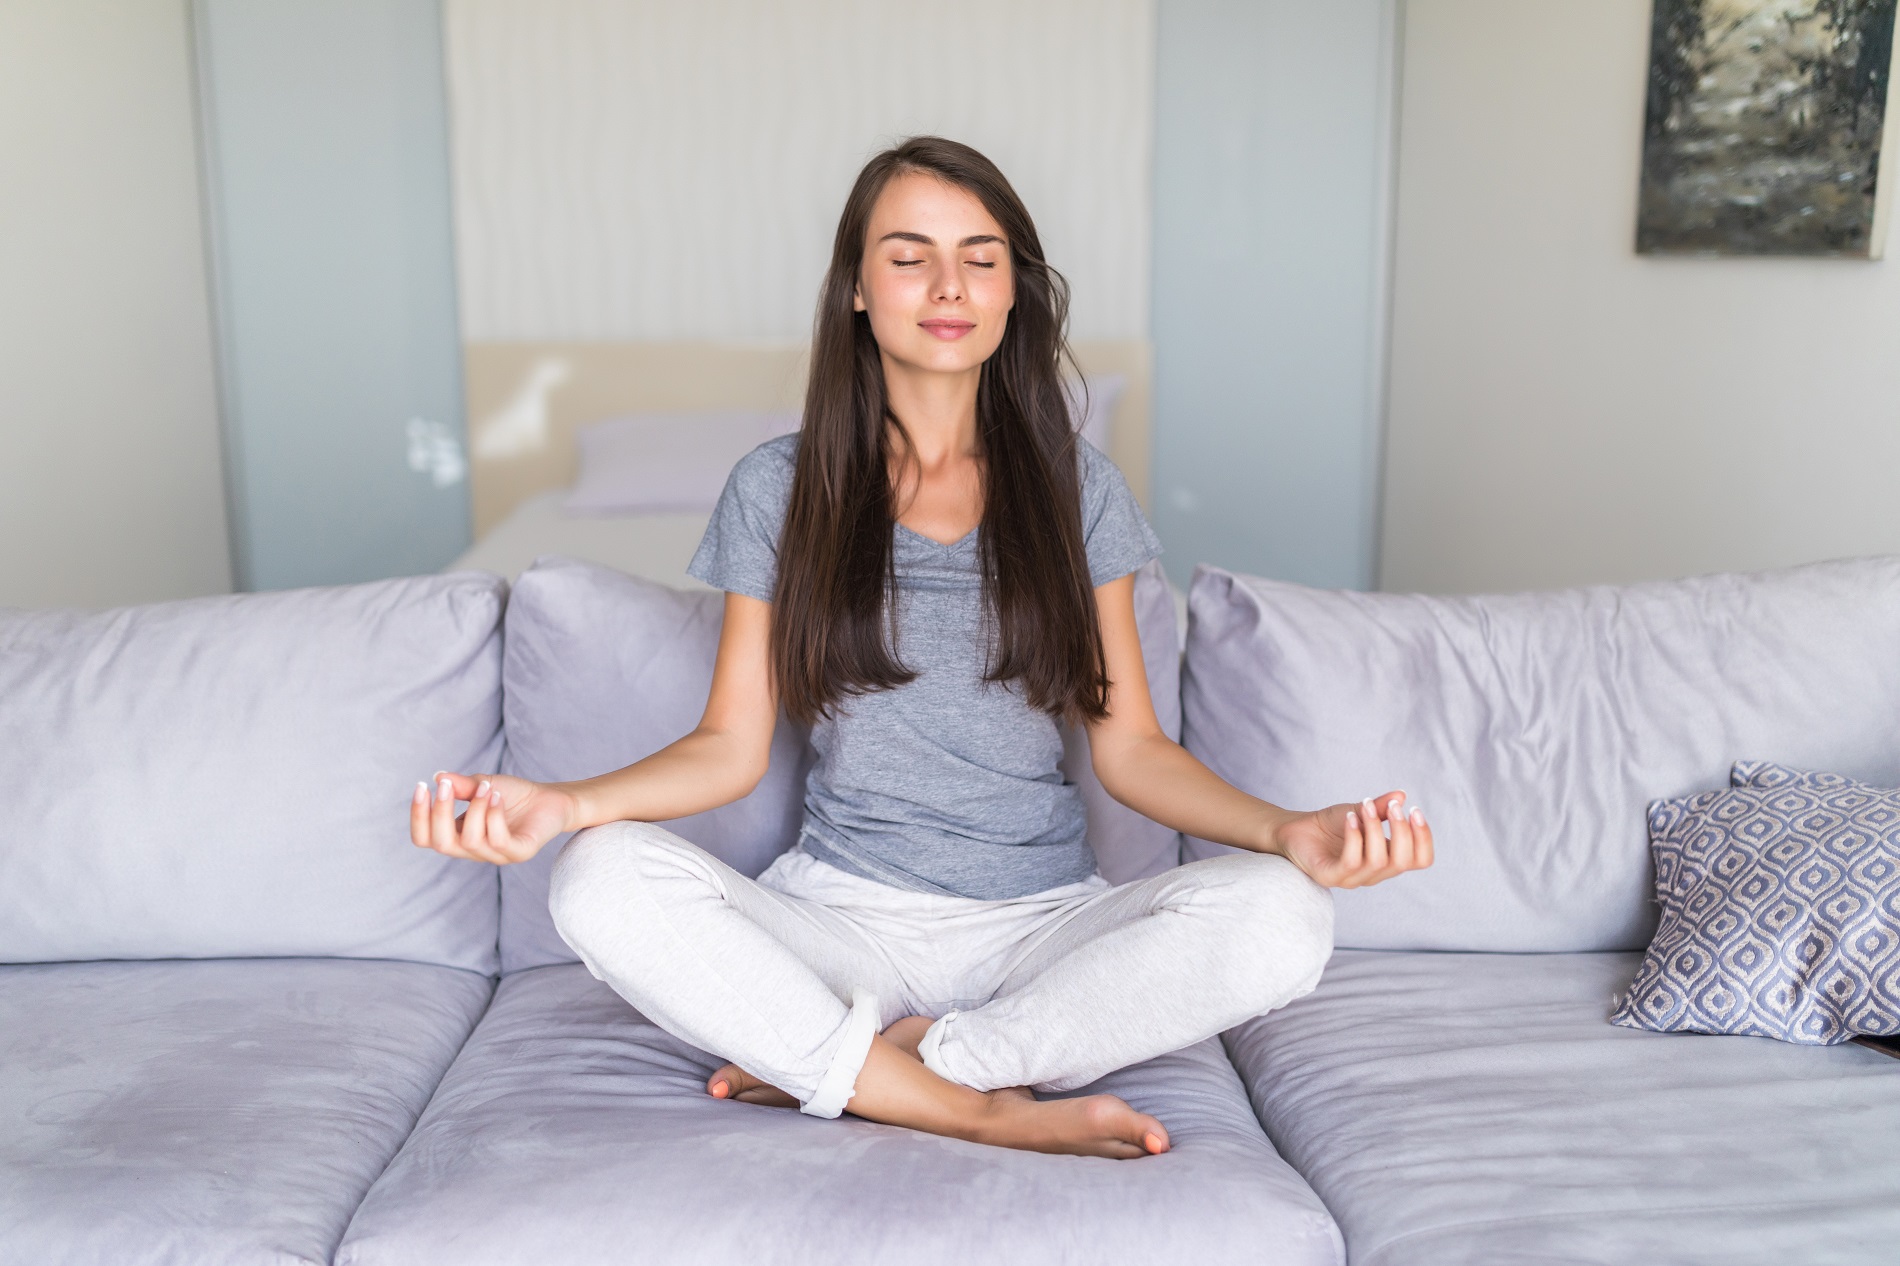 Медитация 1 недели. Медитация на диване. Техника дыхания 4 7 8 для успокоения. Дыхание чтобы уснуть 4-7-8.